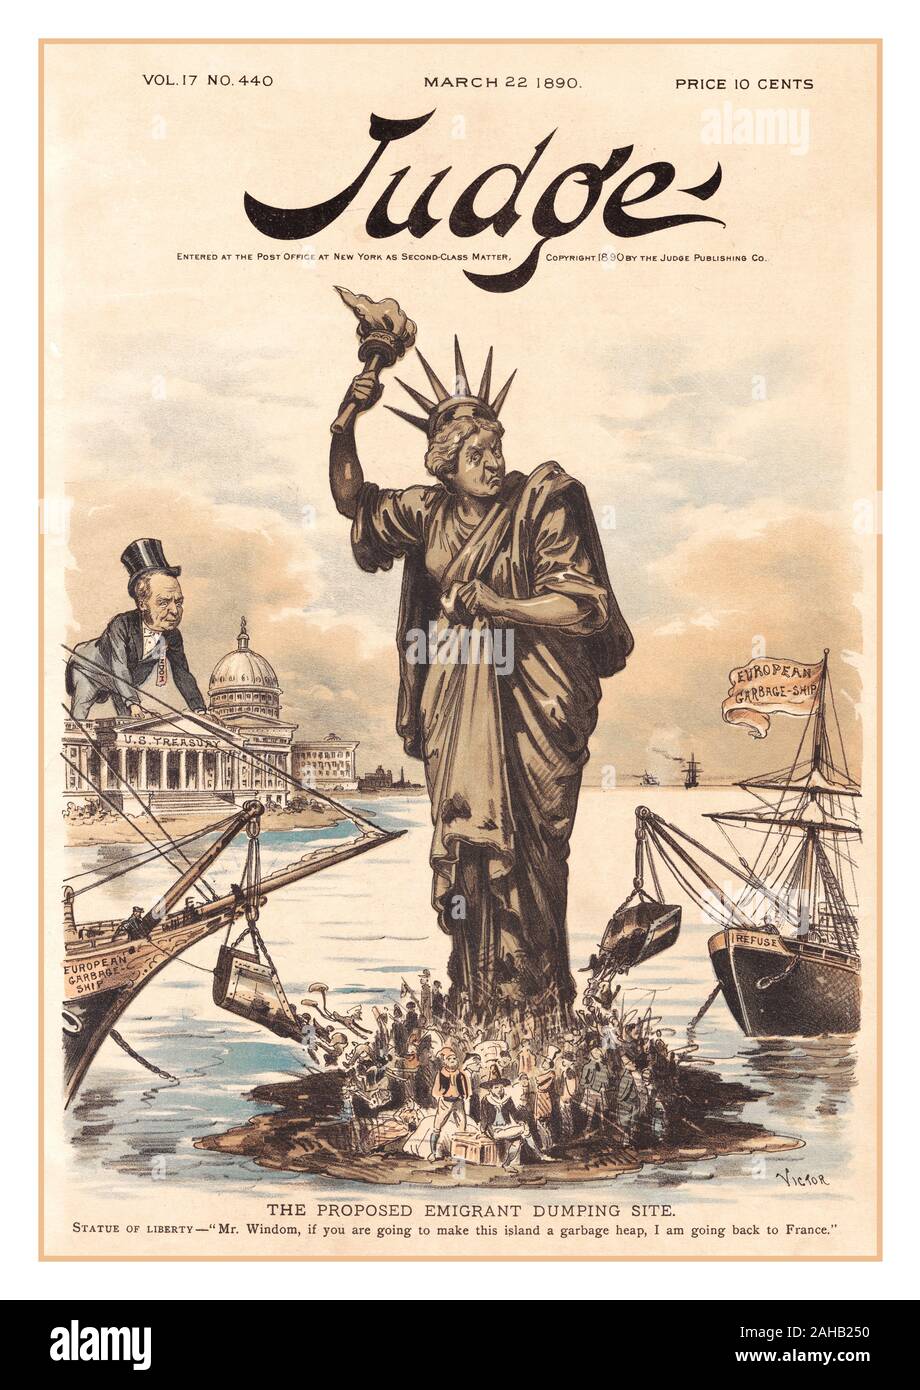 Satirische USA Cartoon 1890 Angriffe einen Vorschlag von William Windom, Sekretär des Schatzamtes im Harrison Verwaltung, die Verarbeitung von Einwanderern aus, um die Batterie zu Liberty Island zu bewegen. Zwei "Europäische Müll Schiffe", eine mit der Aufschrift "Verweigern", kurzerhand einen schäbigen Mix von Einwanderern an den Füßen der Freiheitsstatue. Windom schaut aus der Staatskasse Gebäude in Washington als Lady Liberty, ihr Gesicht war wütend, hebt ihre Roben von verschmutzt werden zu halten. "Mr. Windom," sagt sie, "wenn Sie machen diese Insel zu einem Müllhaufen, bin ich zurück nach Frankreich zu gehen.' Stockfoto